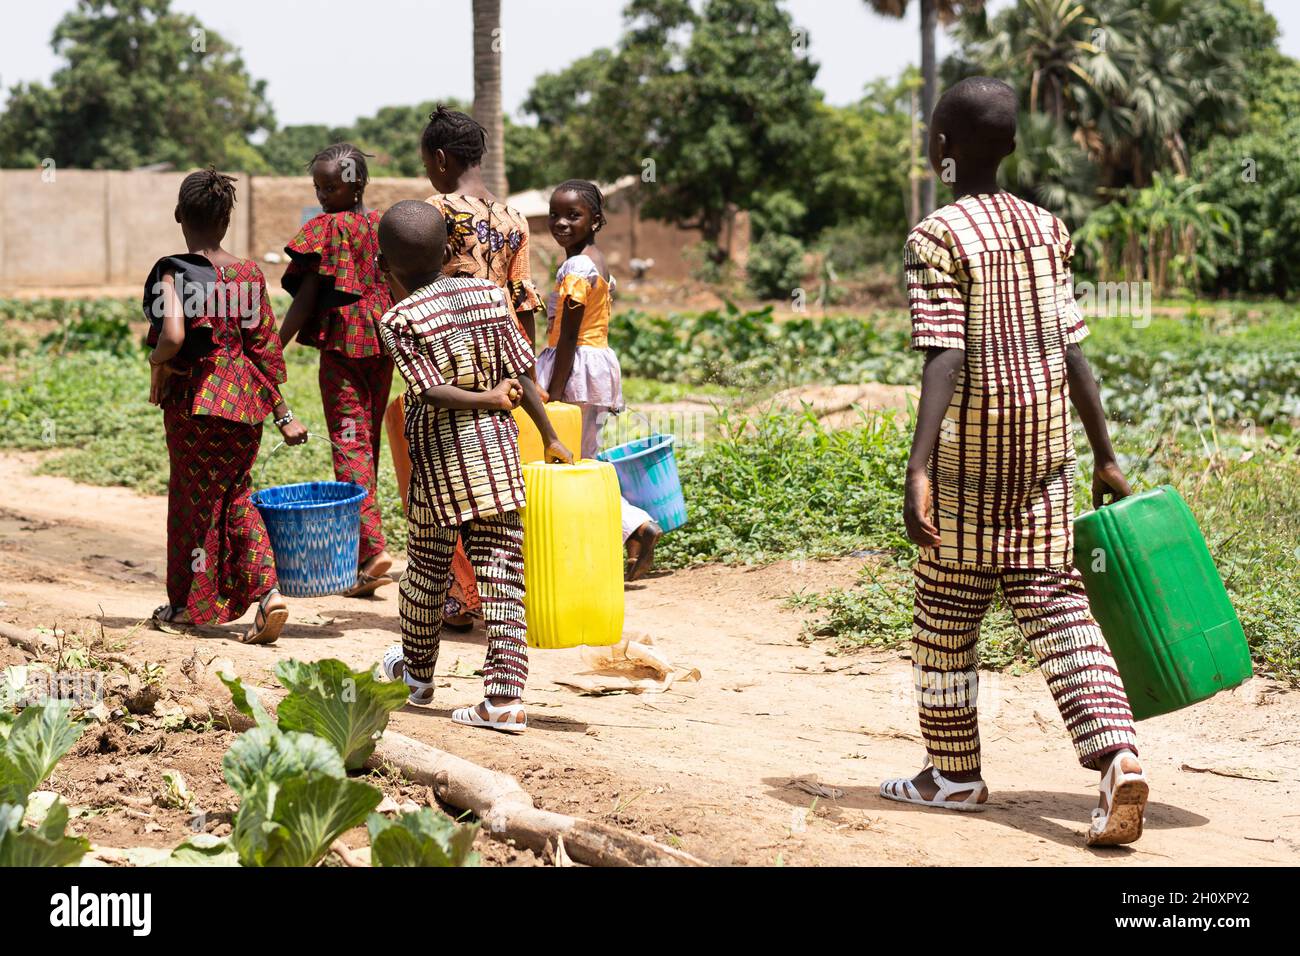 Groupe d'enfants africains noirs transportant des conteneurs d'eau vides sur leur chemin de retour du village bien après avoir aidé à arroser les champs de houles Banque D'Images